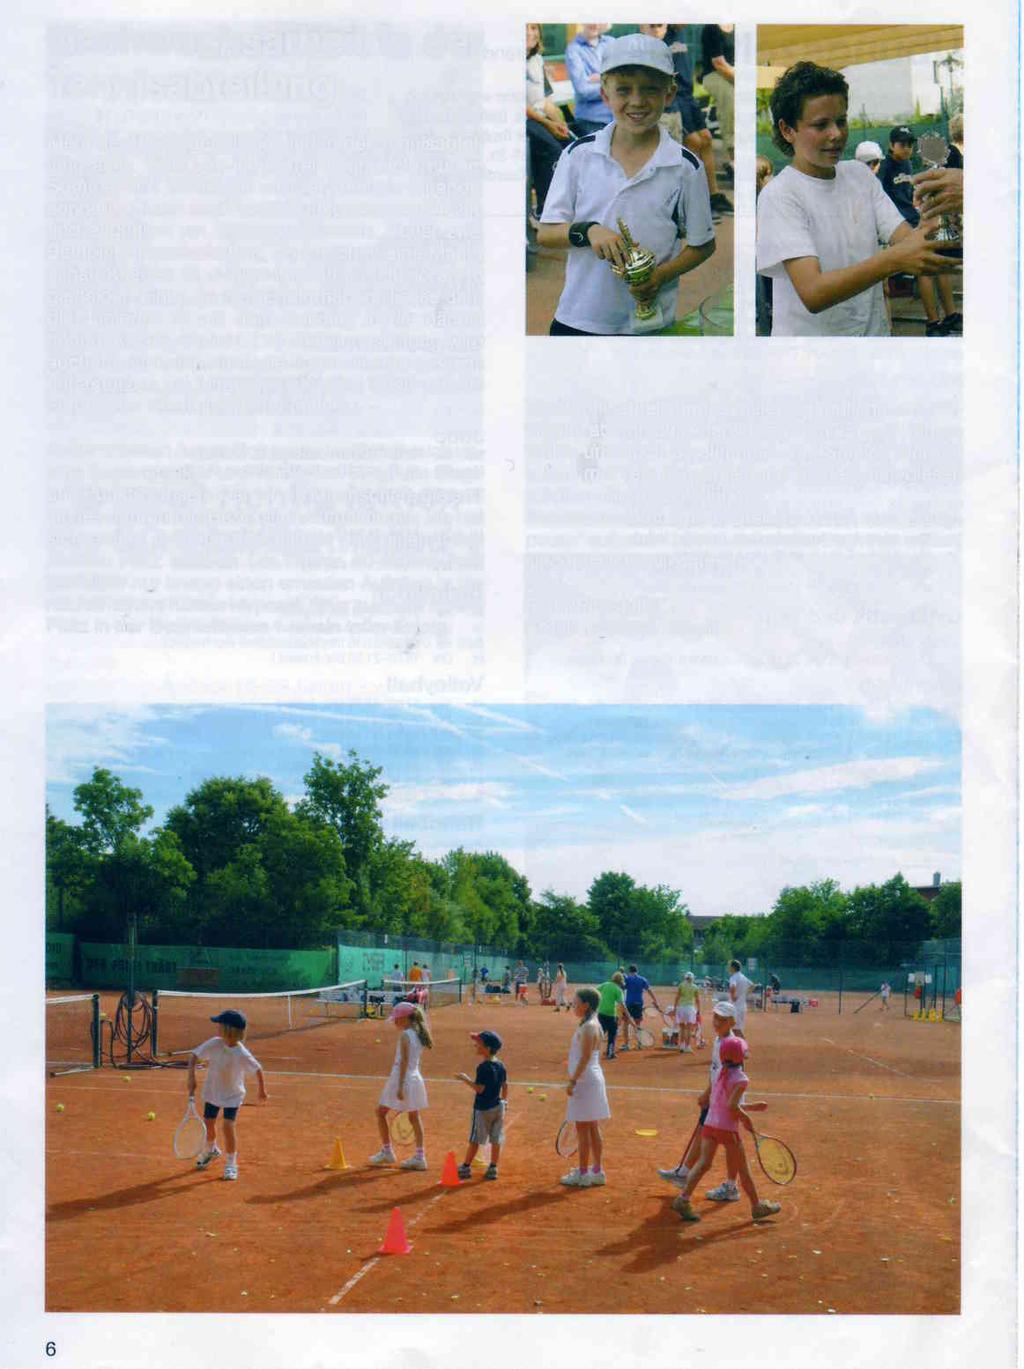 Nachwuchsarbeit in der Tennisabteilung Mehr als 100 Jugendliche sind in der Tennisabteilung aktiv.